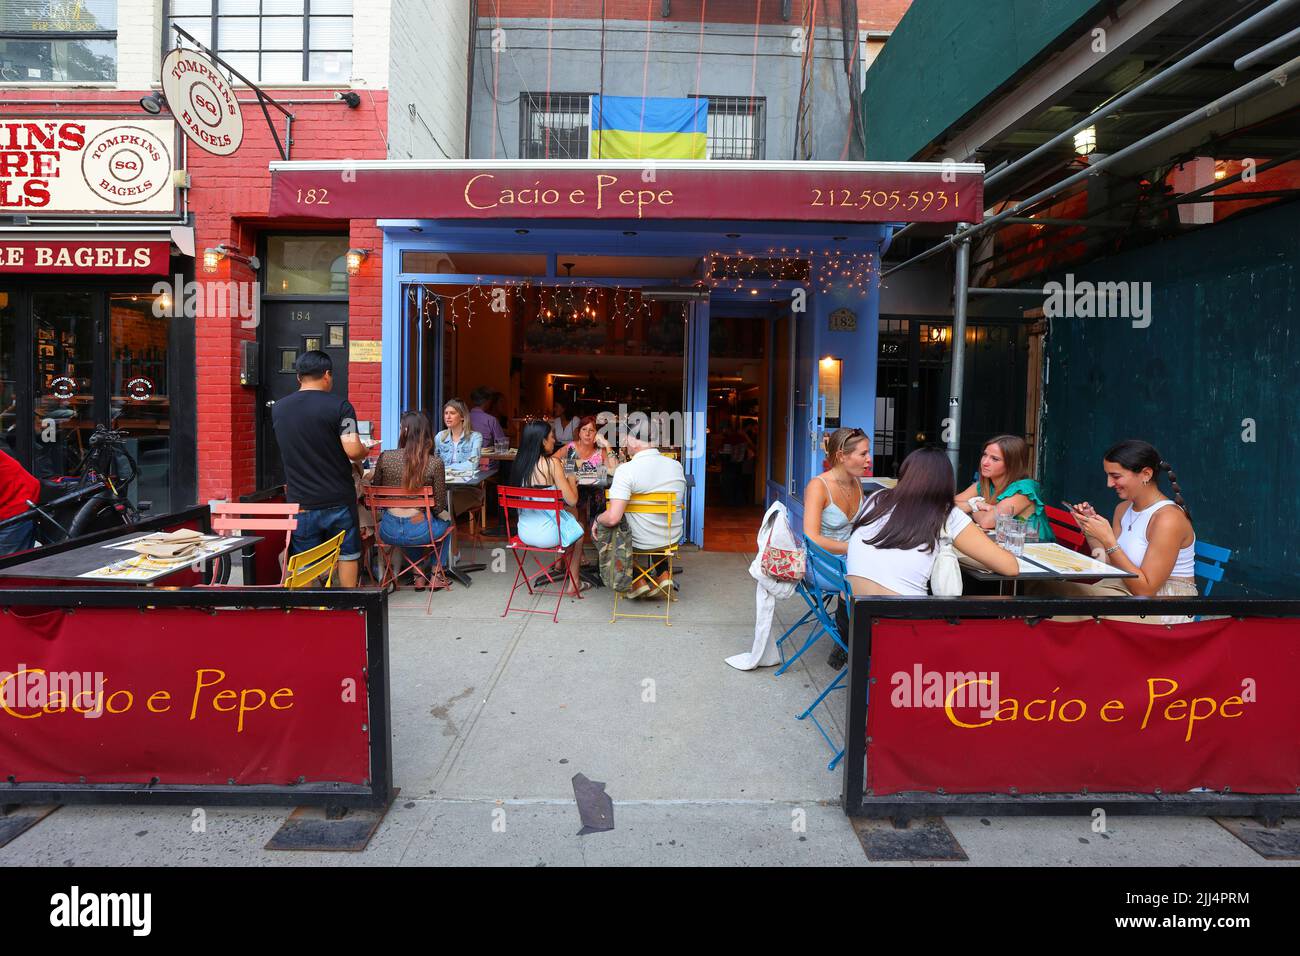 Cacio e Pepe, 182 2. Ave, New York, NYC Foto von einem italienischen Restaurant im East Village Viertel in Manhattan. Stockfoto